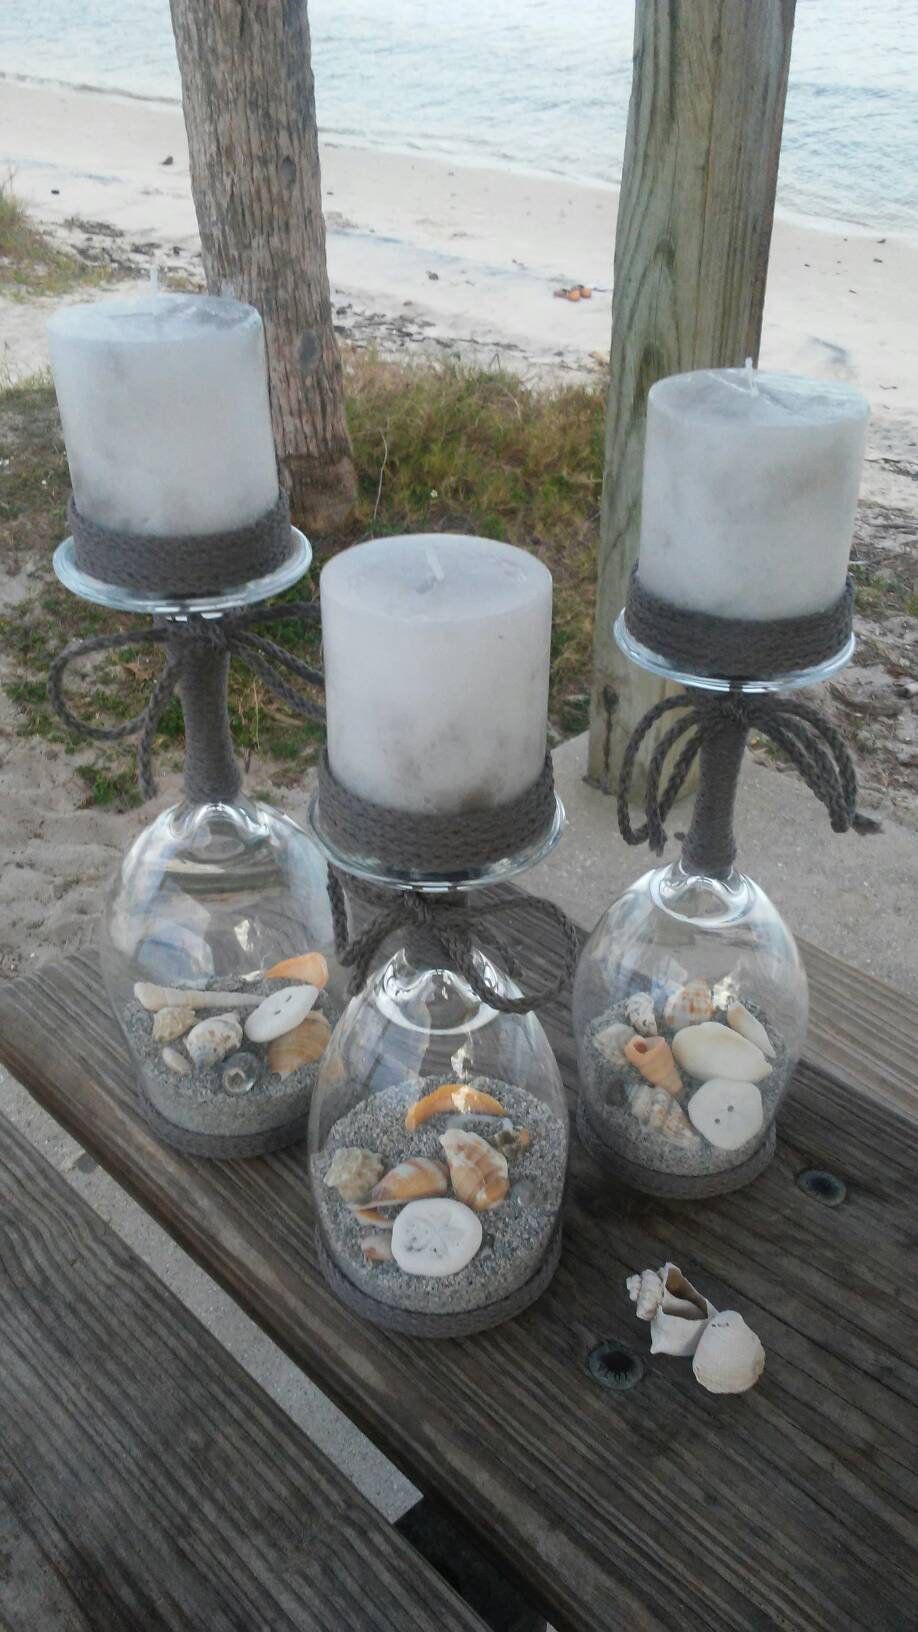 14 room decor Beach candle holders ideas